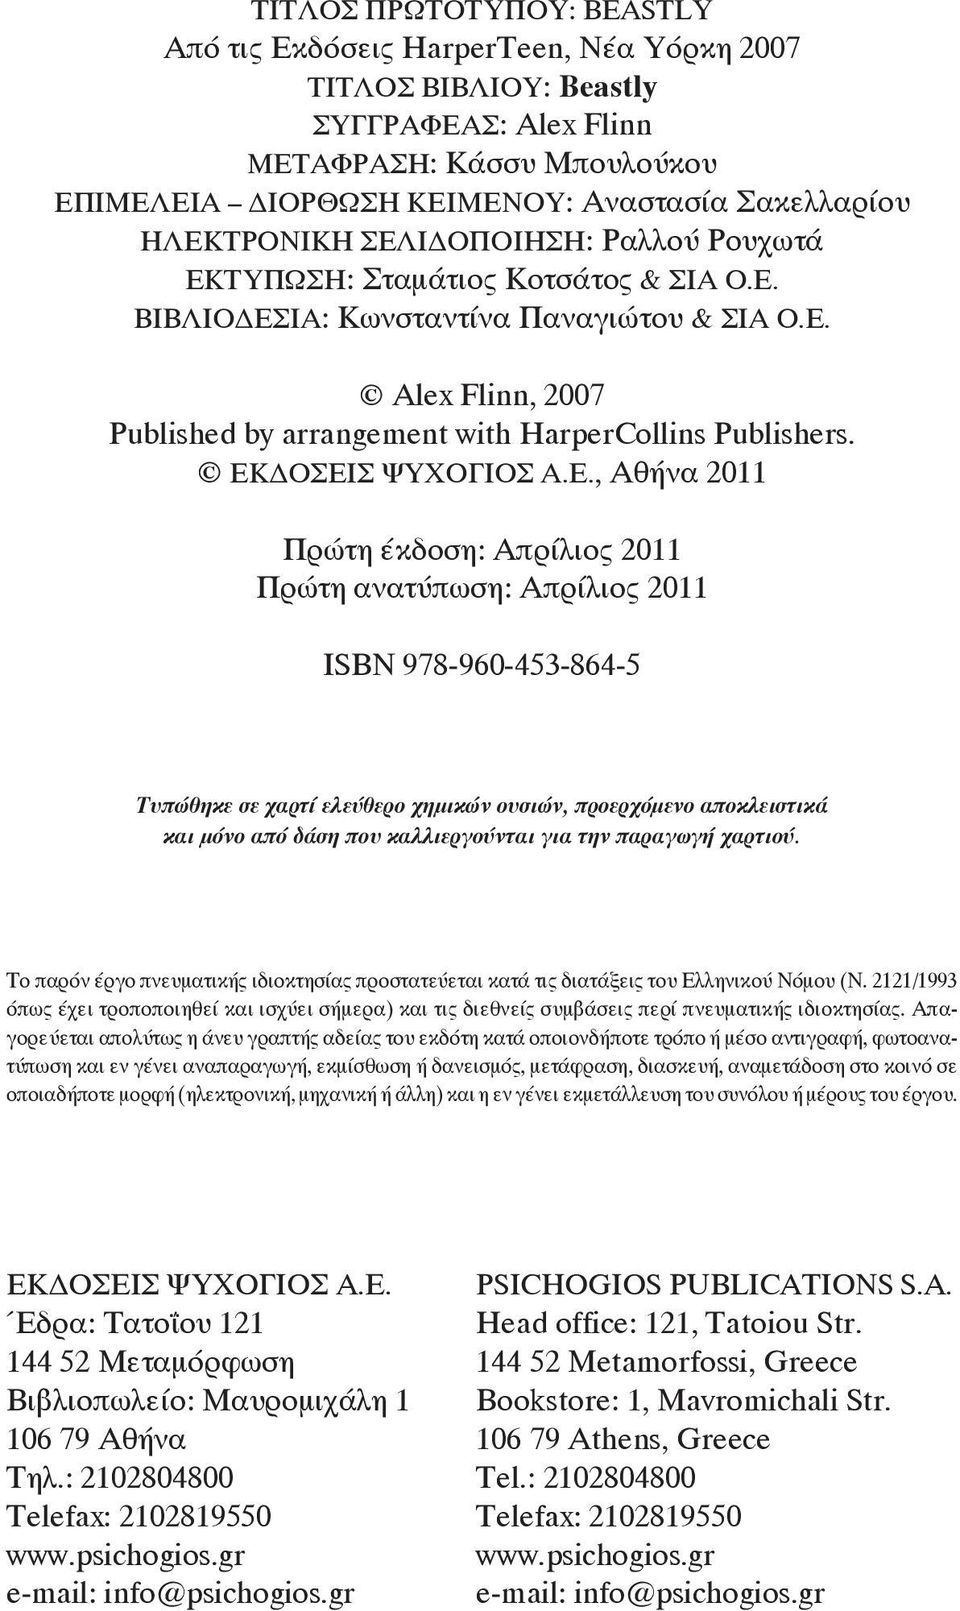 ΕΚΔΟΣΕΙΣ ΨΥΧΟΓΙΟΣ Α.Ε., Αθήνα 2011 Πρώτη έκδοση: Απρίλιος 2011 Πρώτη ανατύπωση: Απρίλιος 2011 ΙSBN 978-960-453-864-5 Τυπώθηκε σε χαρτί ελεύθερο χημικών ουσιών, προερχόμενο αποκλειστικά και μόνο από